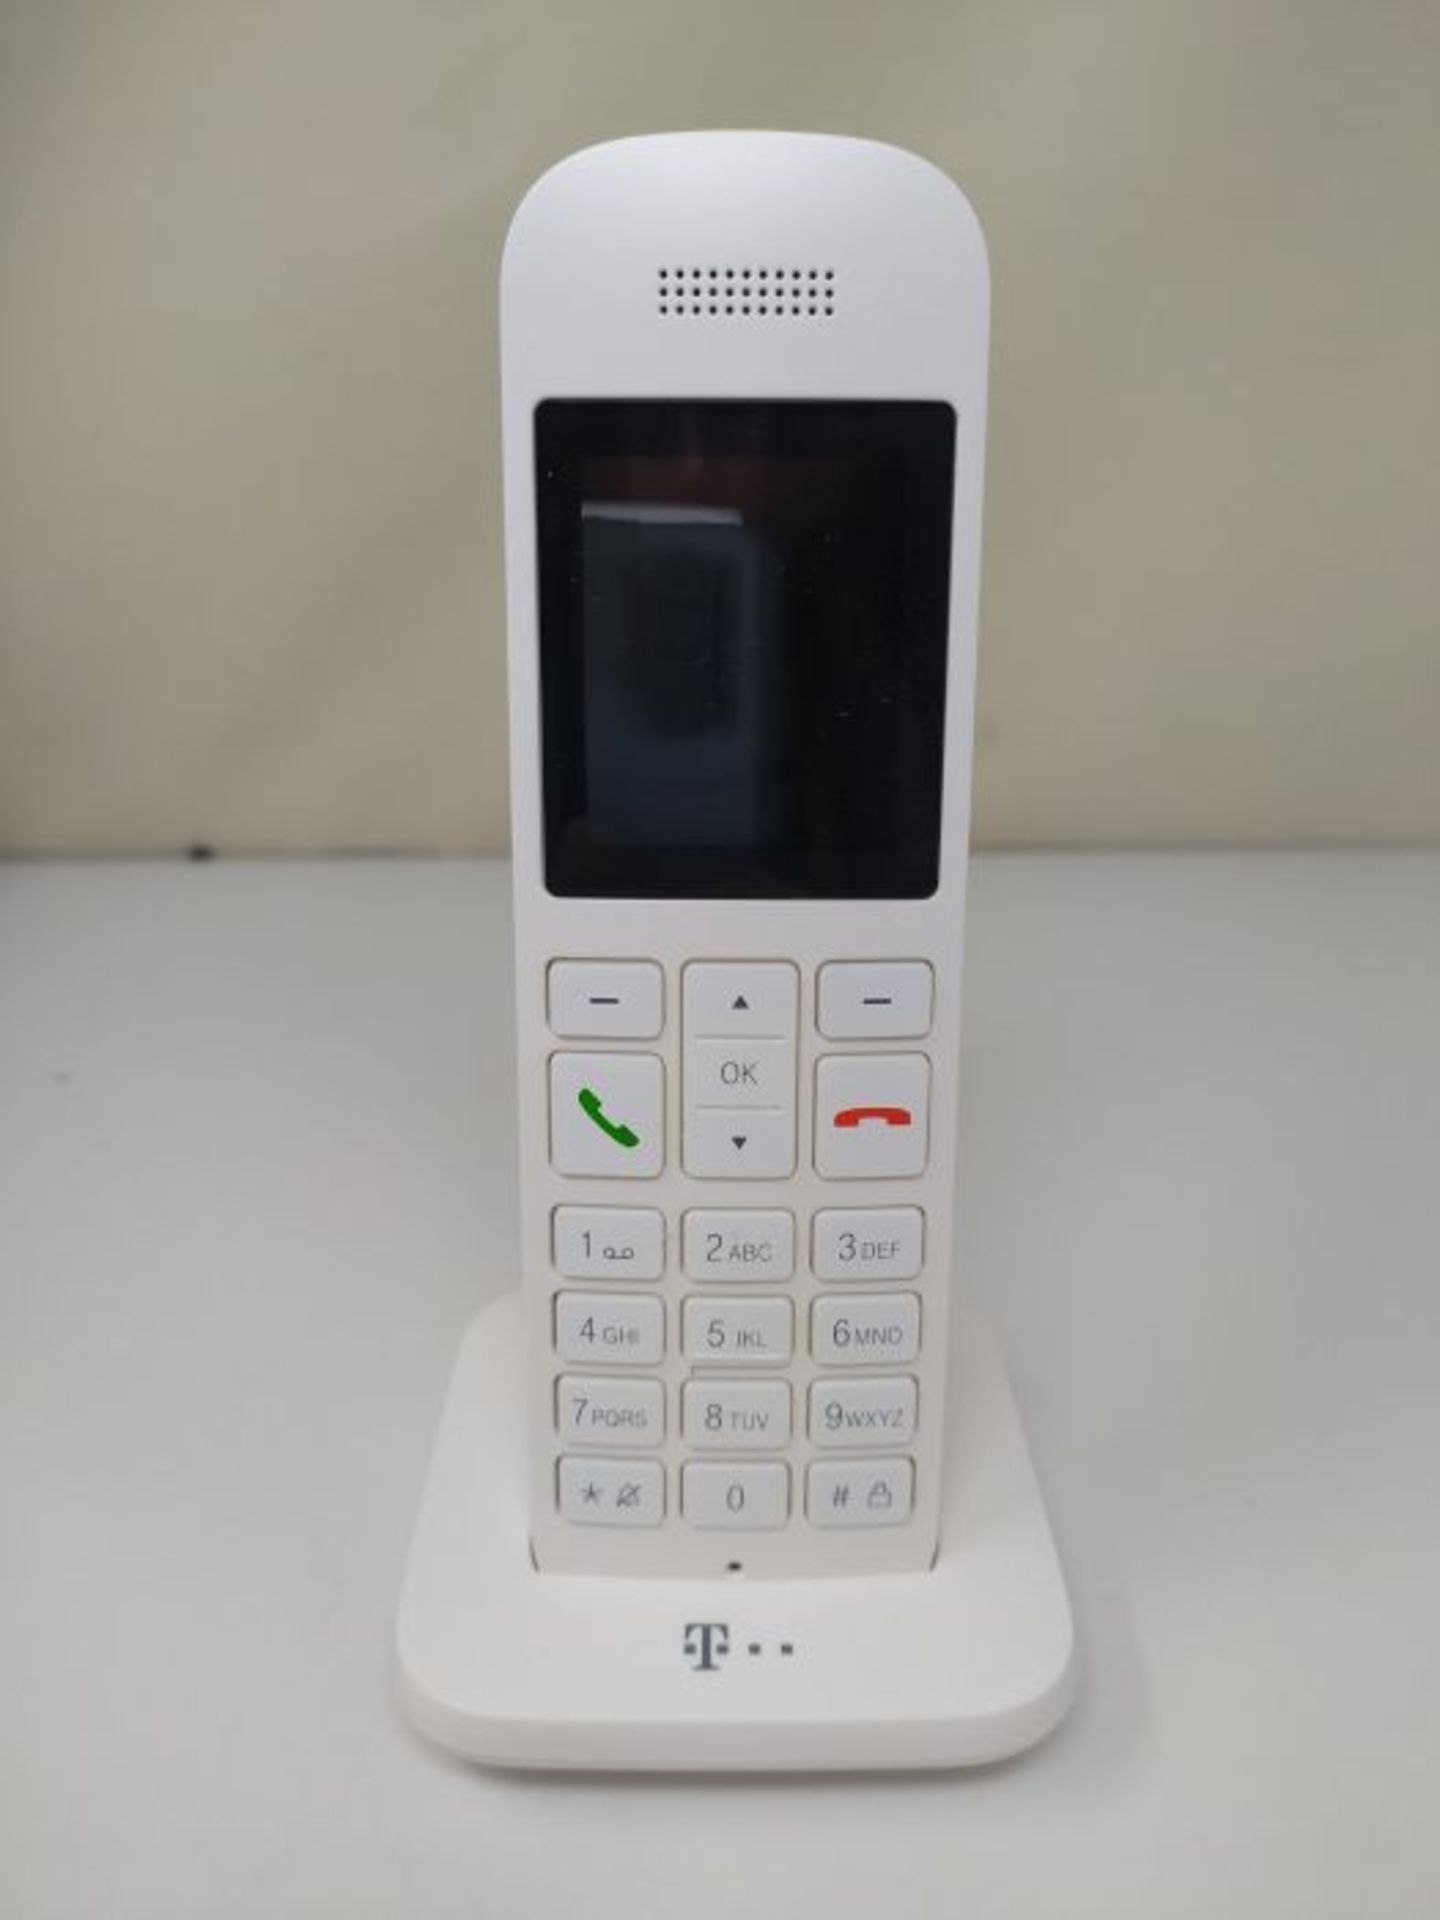 Telekom Speedphone 12 IP phone White Wireless handset TFT - Telekom Speedphone 12, Whi - Image 3 of 3